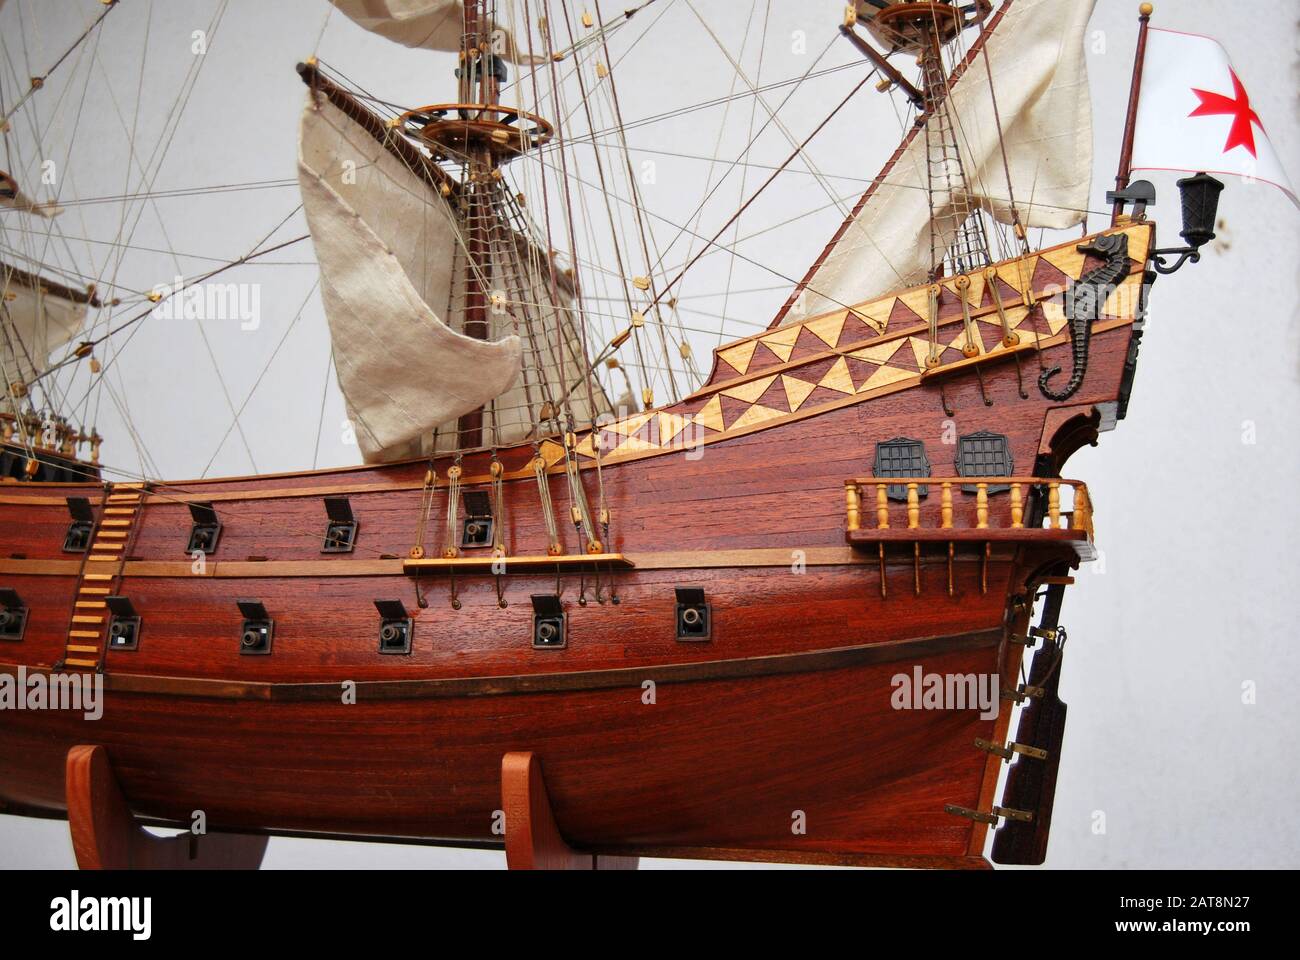 Fabrication de maquettes navales, détail - maquette de bateau en bois. Banque D'Images